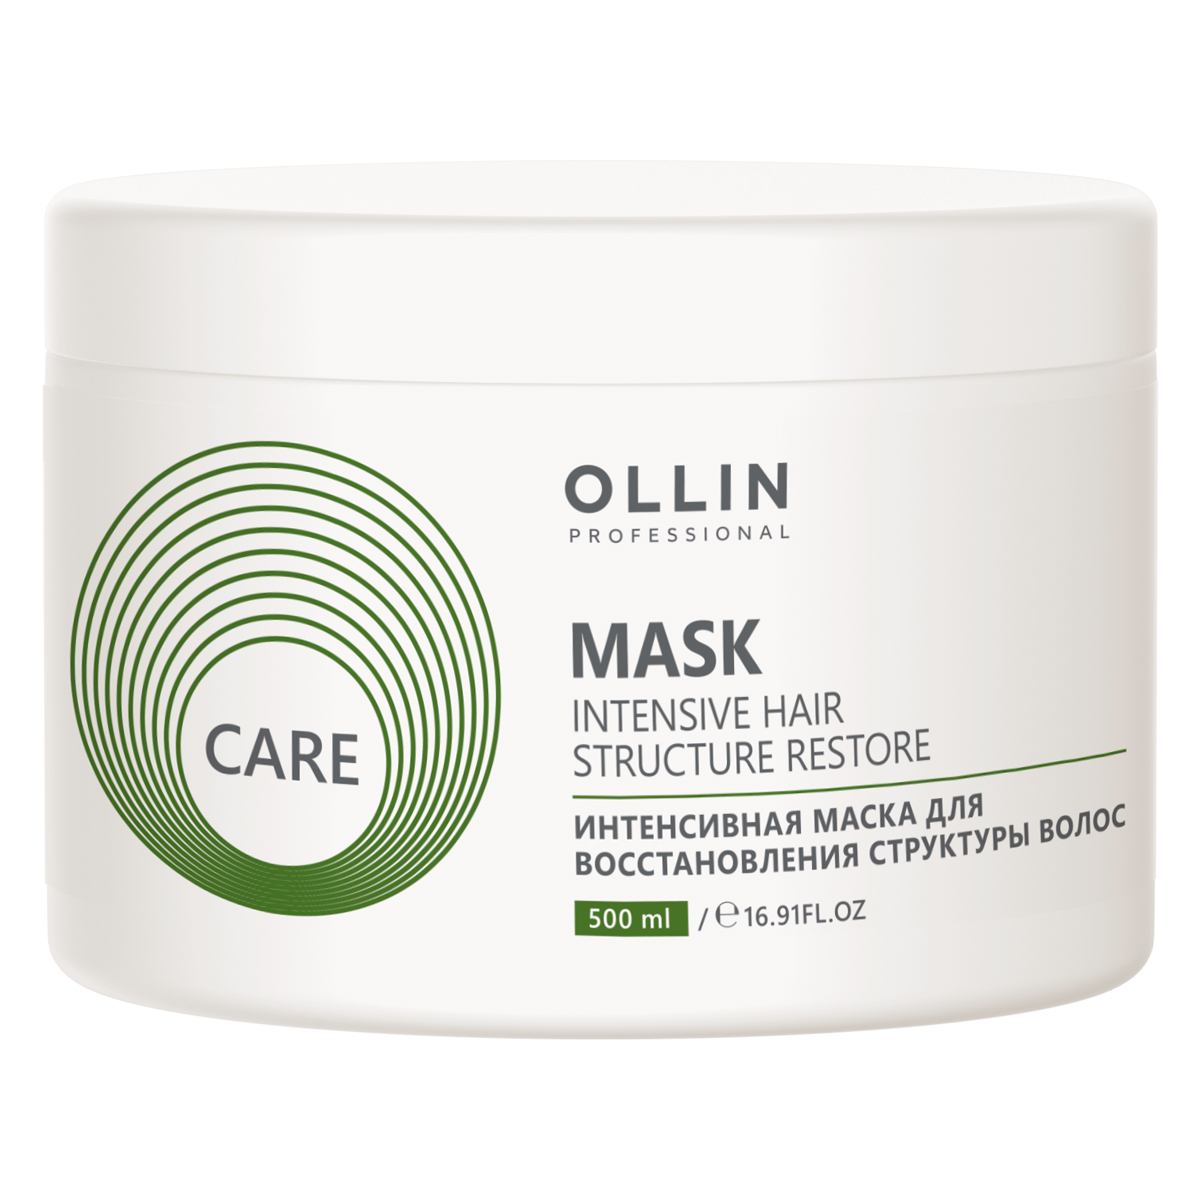 Ollin Professional Интенсивная маска для восстановления стру